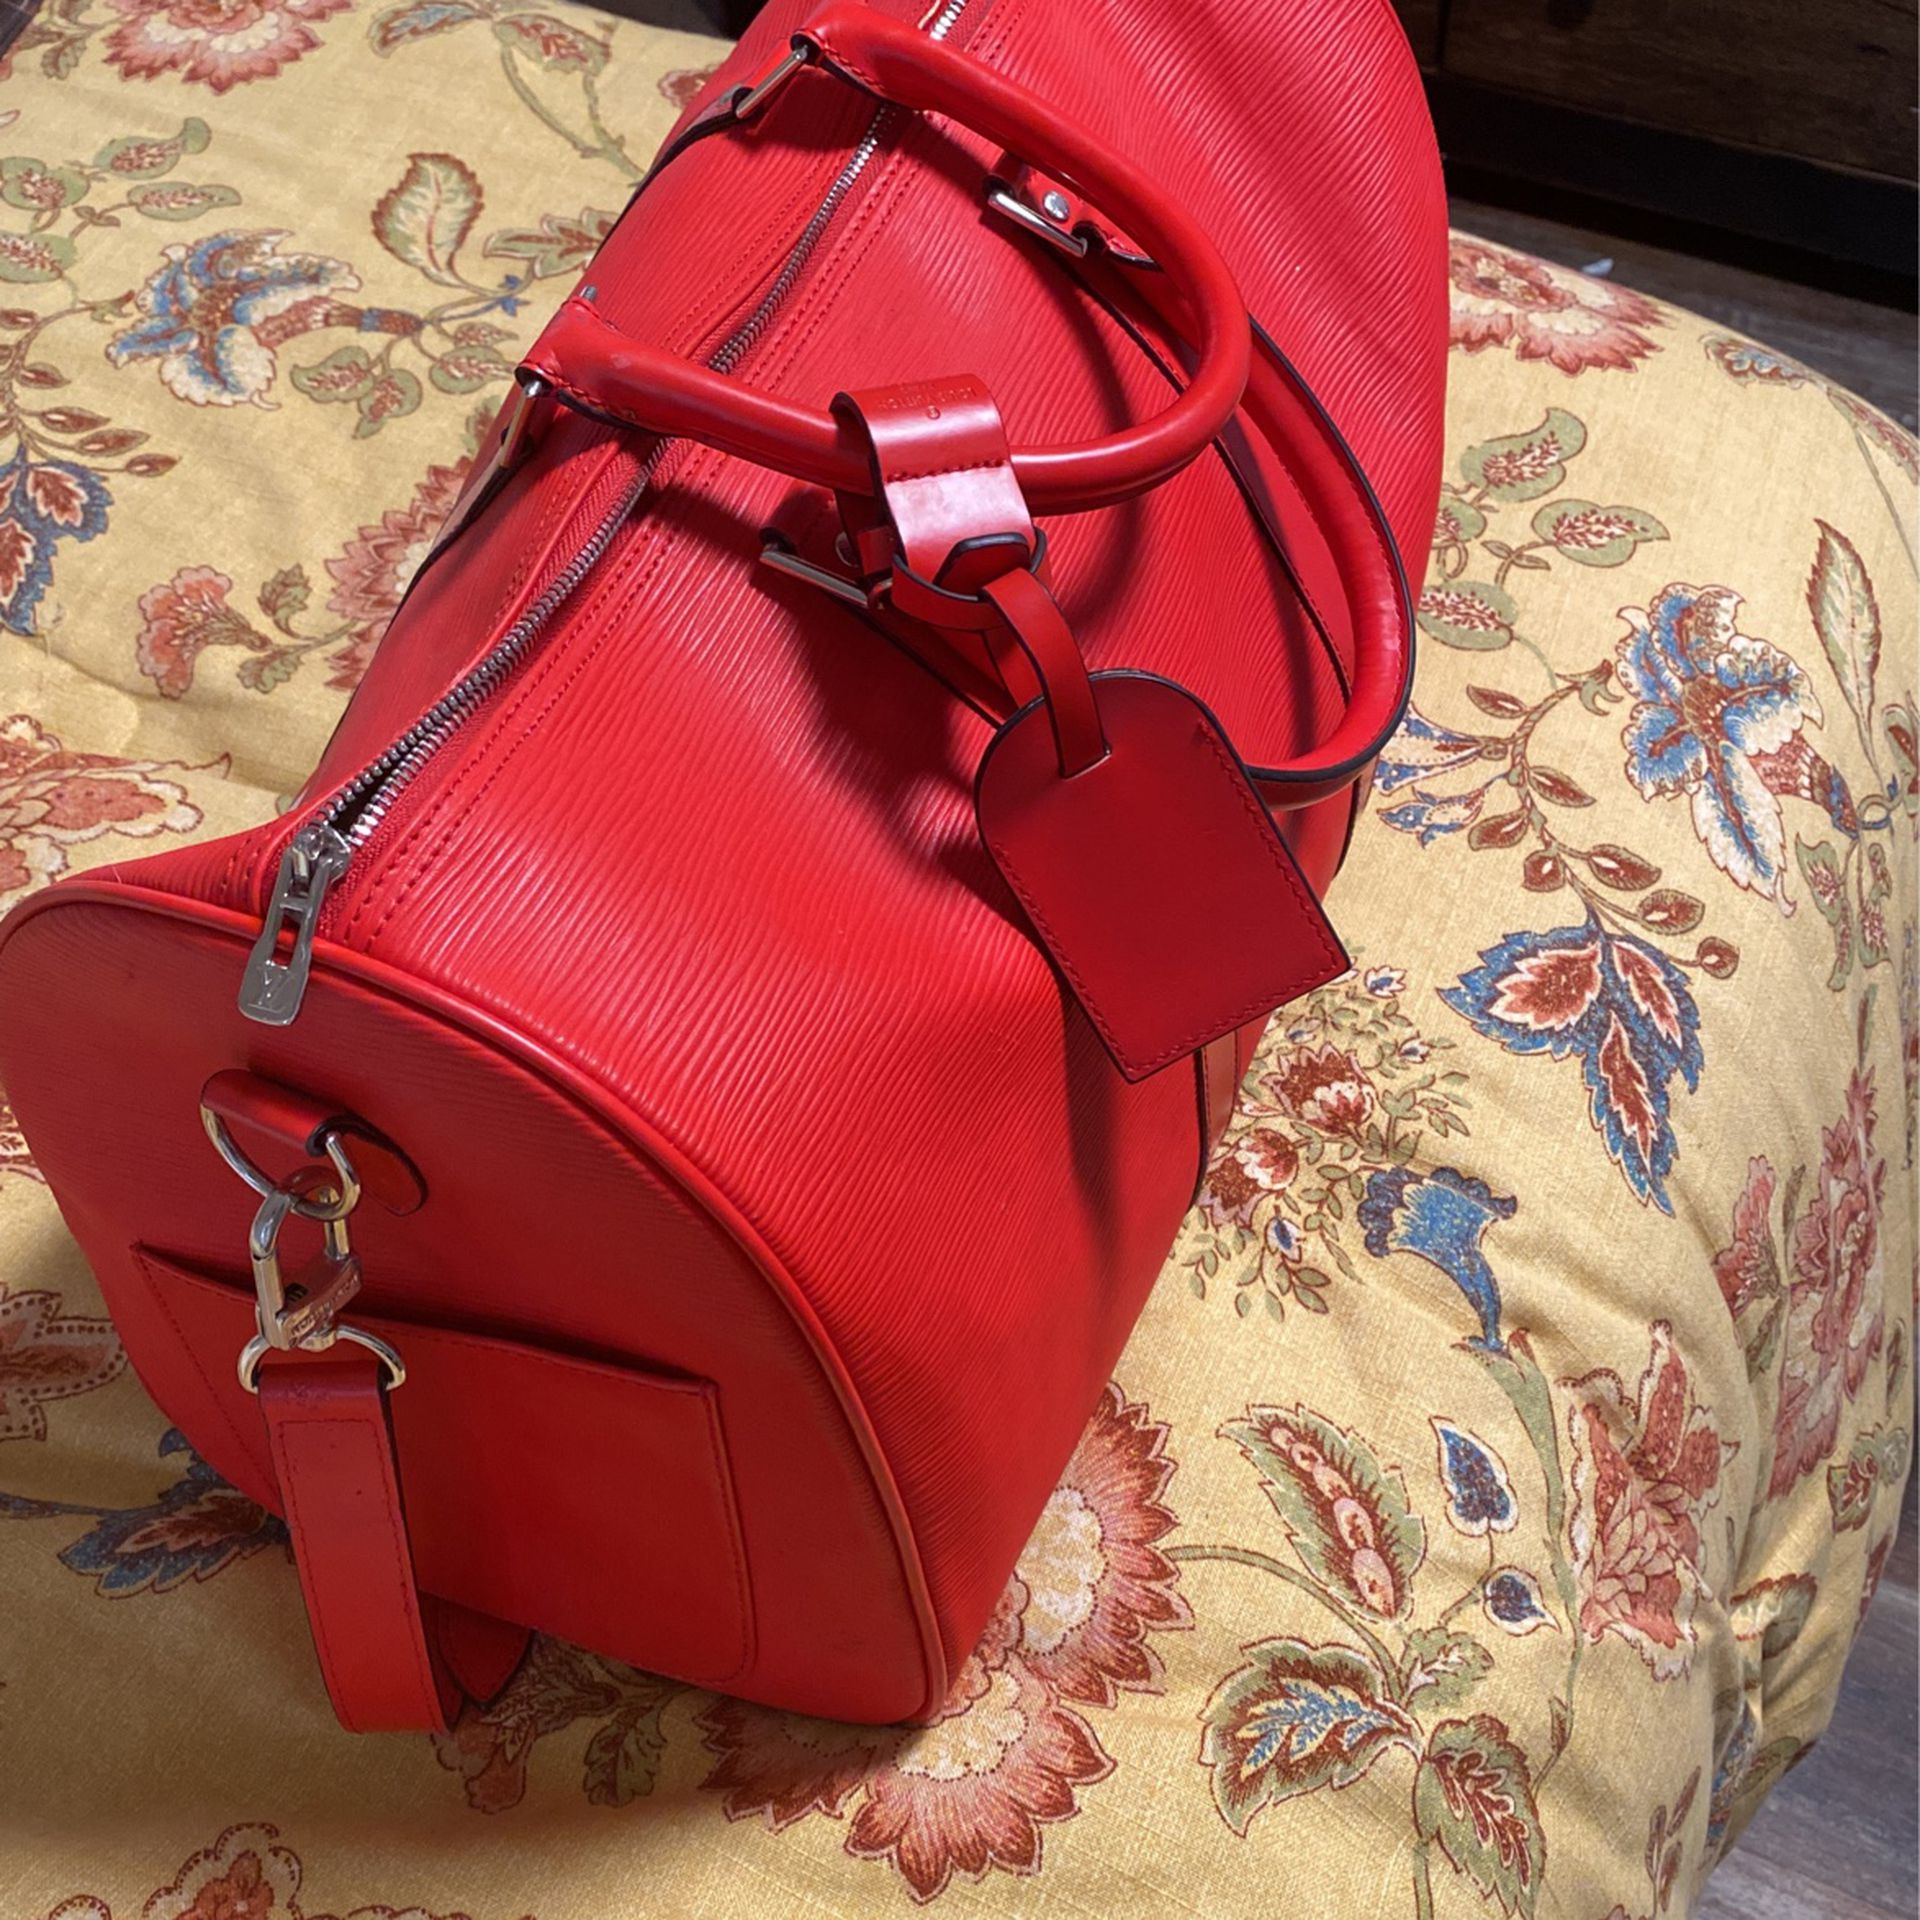 Red Supreme Bag!!